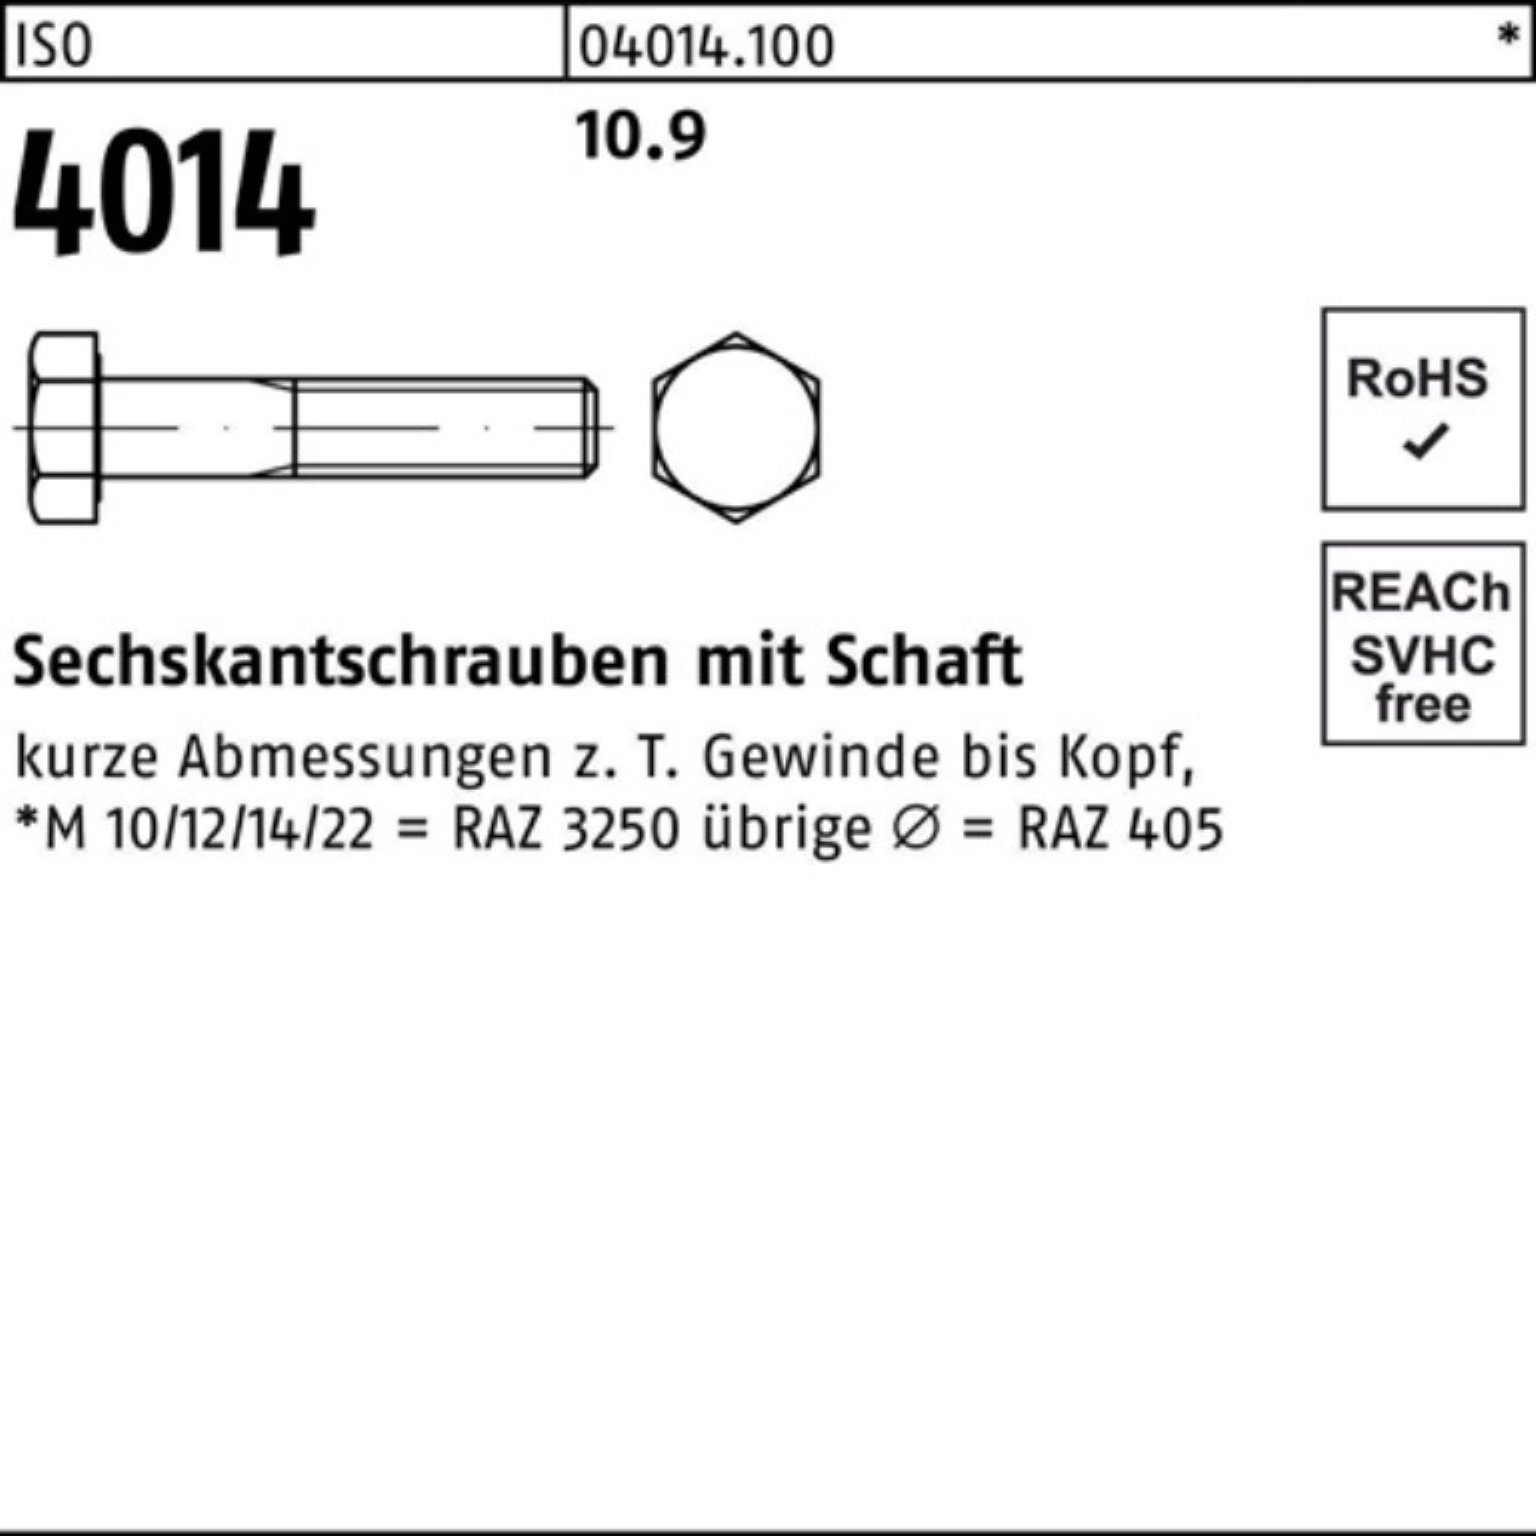 Stück ISO Pack IS Bufab Sechskantschraube 10.9 100er M24x Schaft 4014 1 300 Sechskantschraube